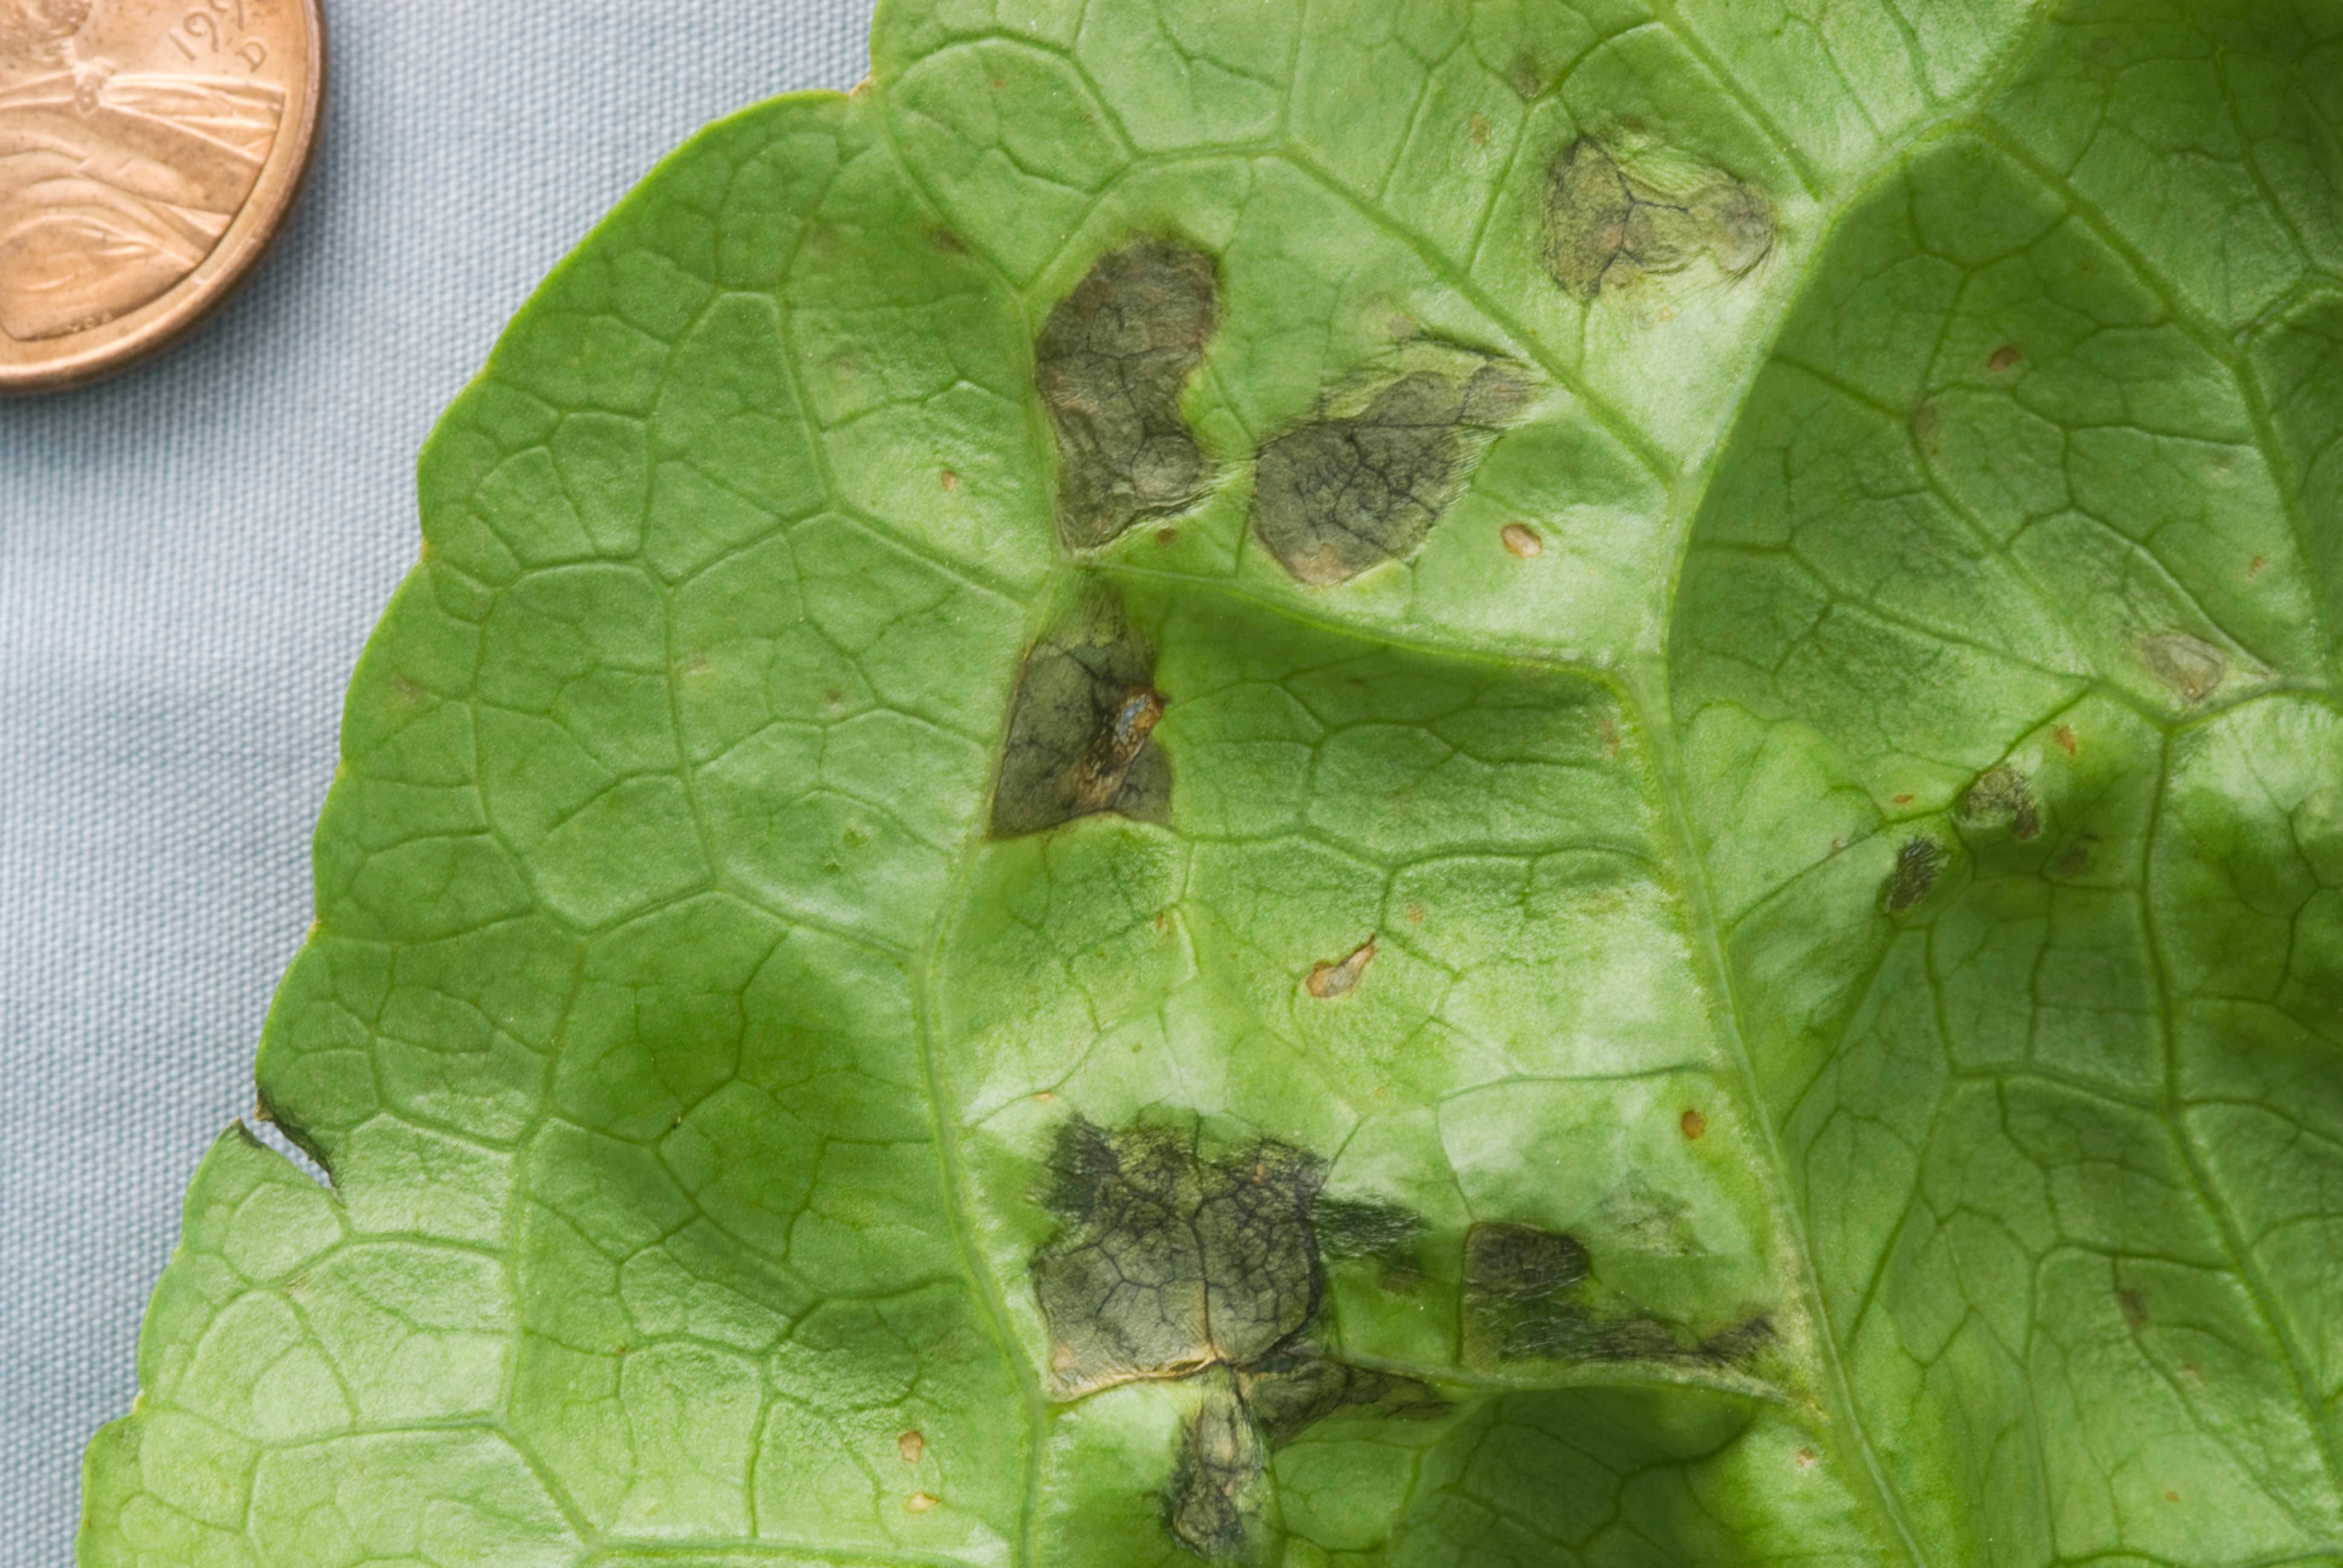 bacterial leaf spot of lettuce: request for samples